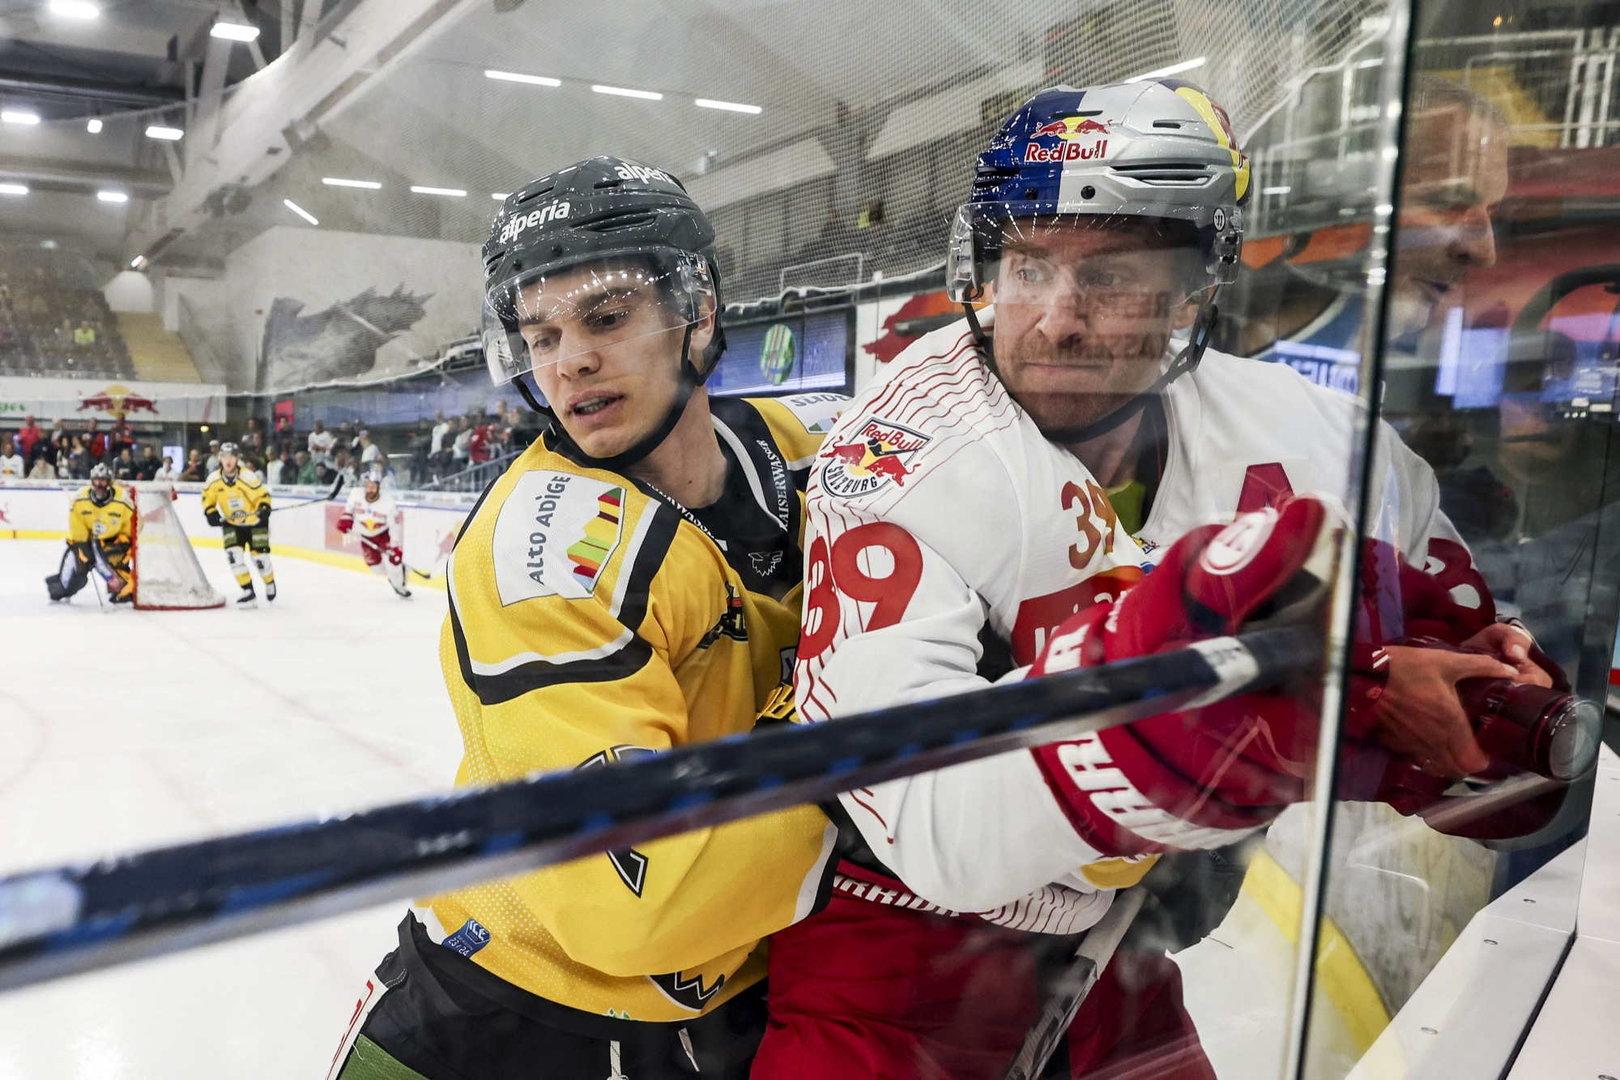 Salzburg siegt im Eishockey-Spitzenduell und ist neuer Tabellenführer